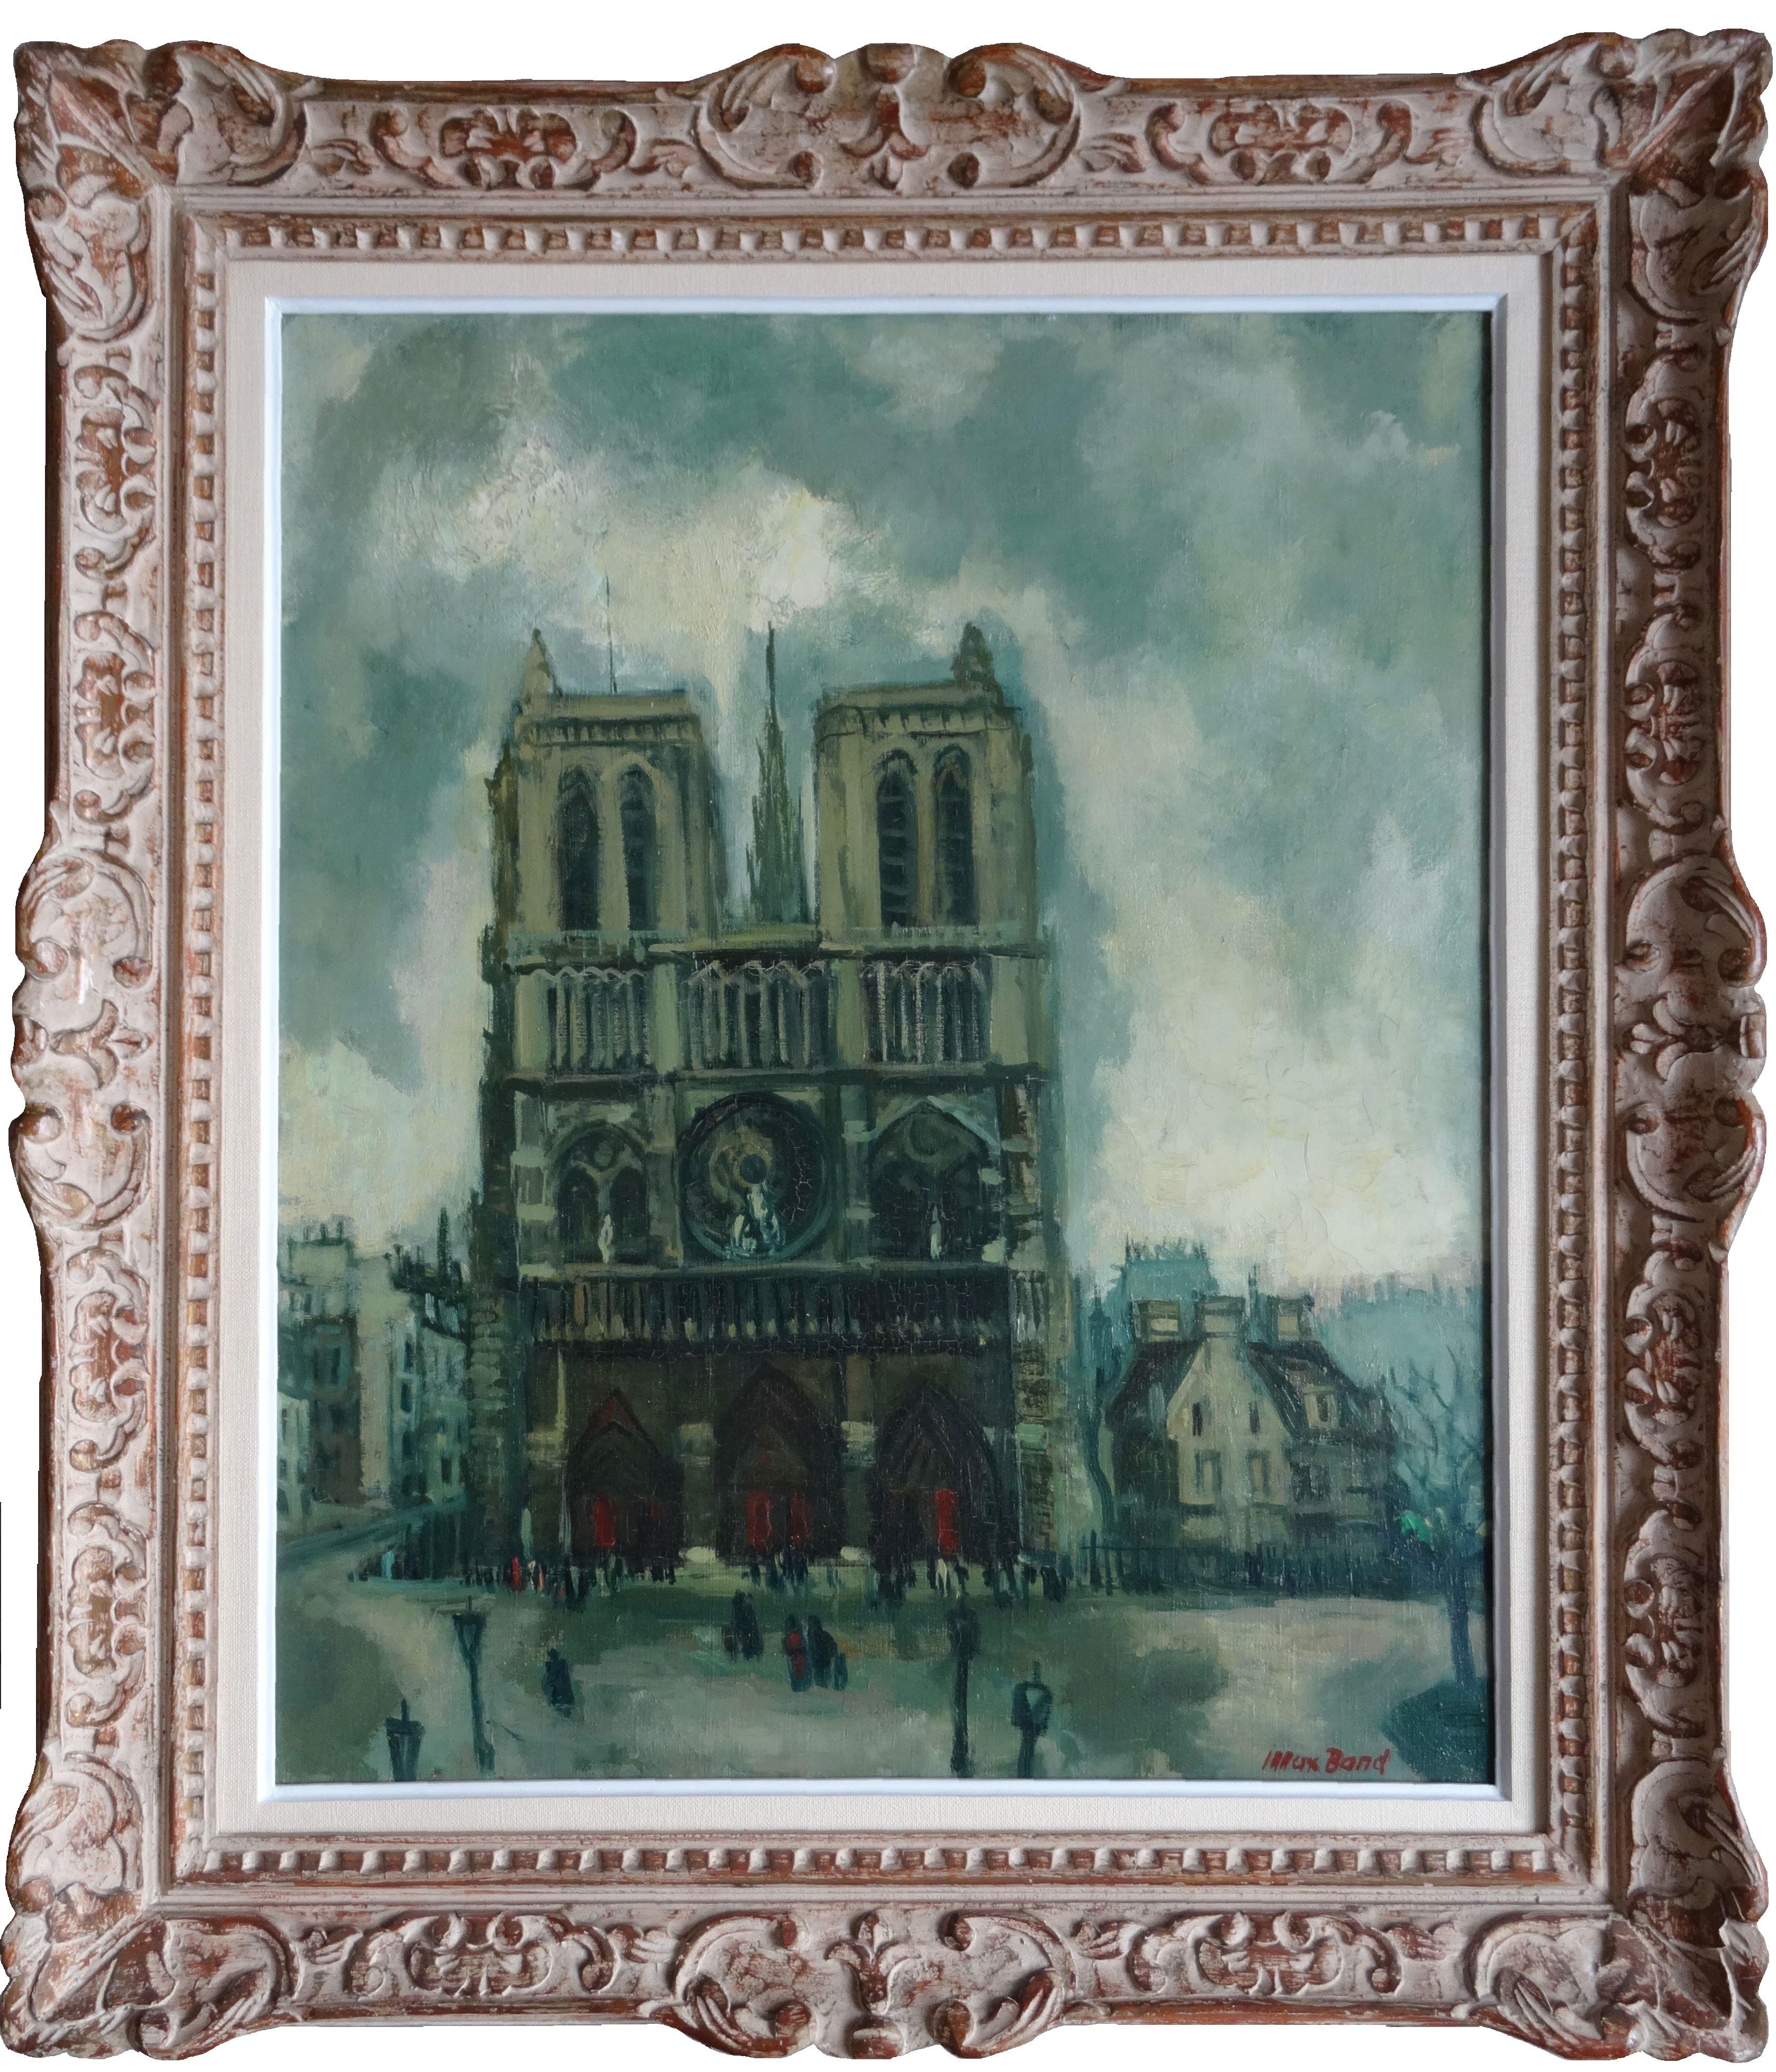 Notre-Dame de Paris. Öl auf Leinwand, 65x54 cm – Painting von Max Band